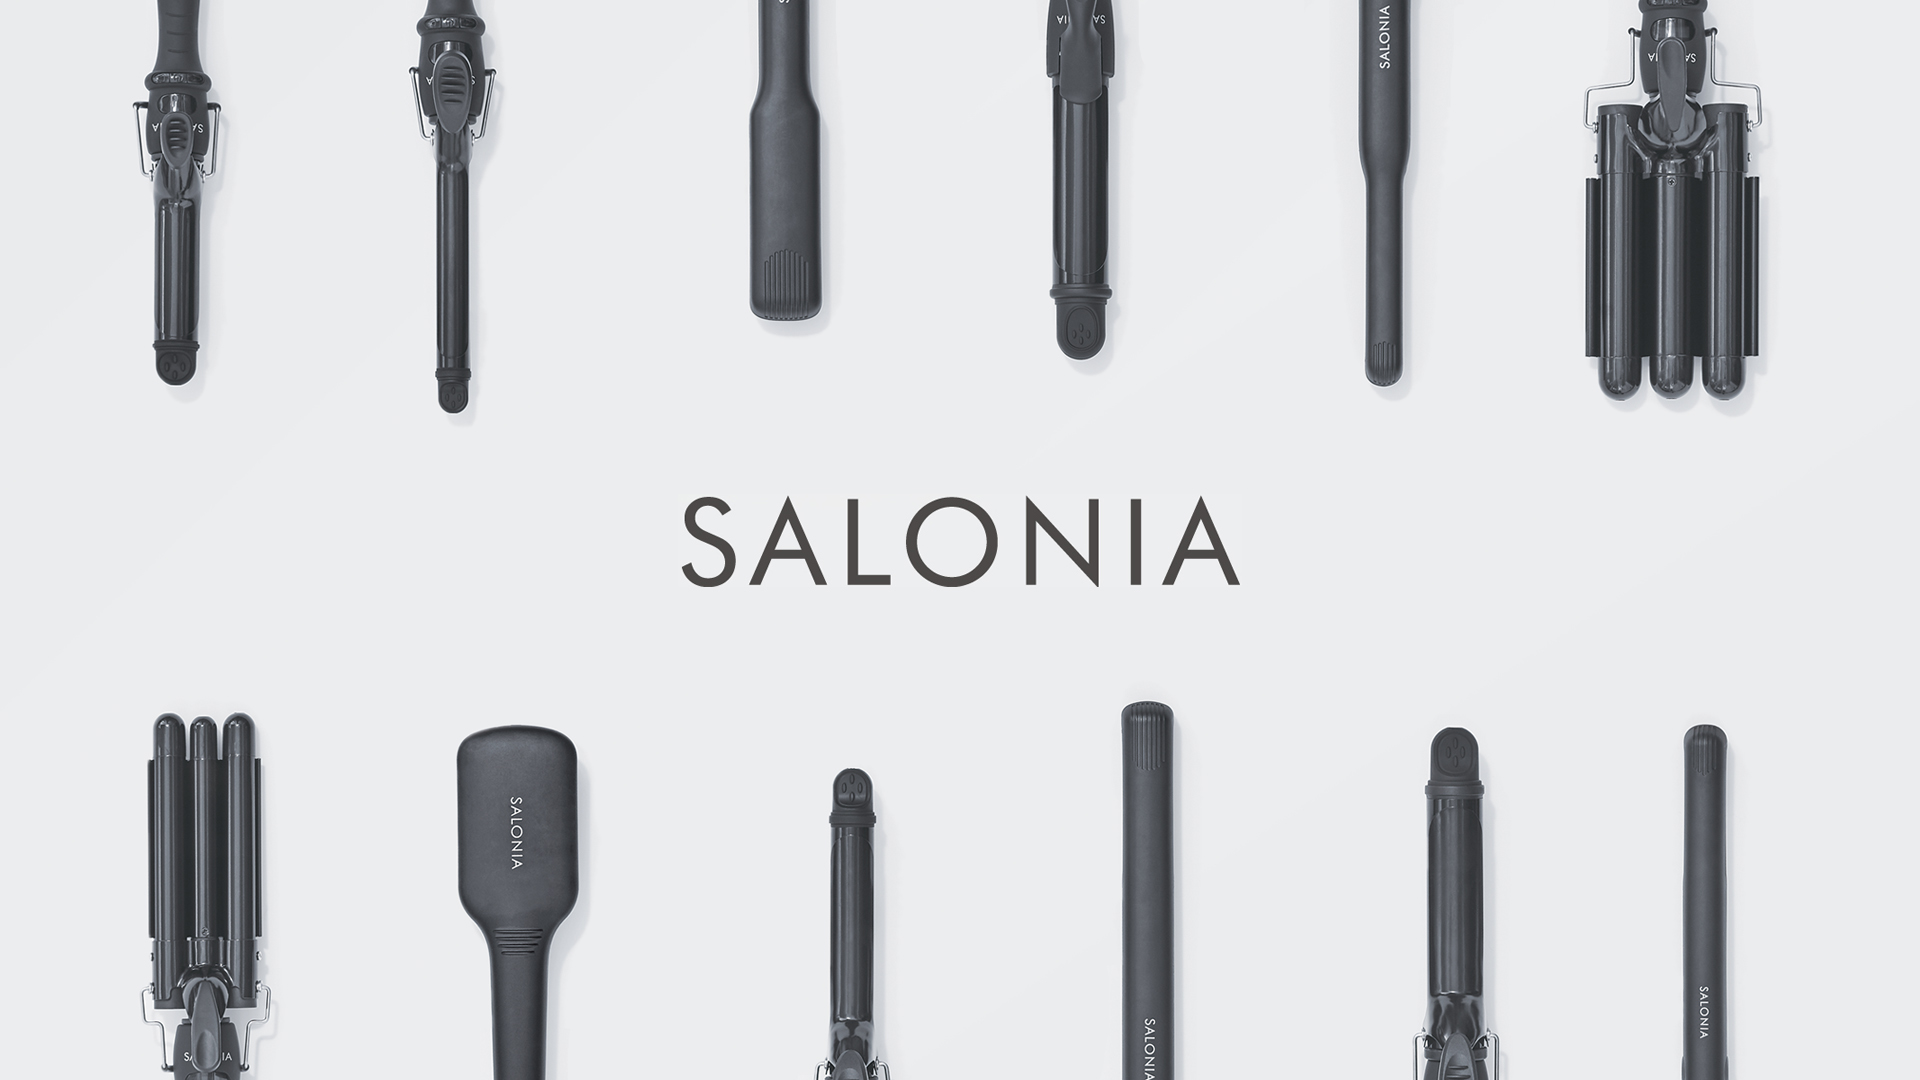 SALONIAシリーズからも4商品が021年度グッドデザイン賞を受賞しました!